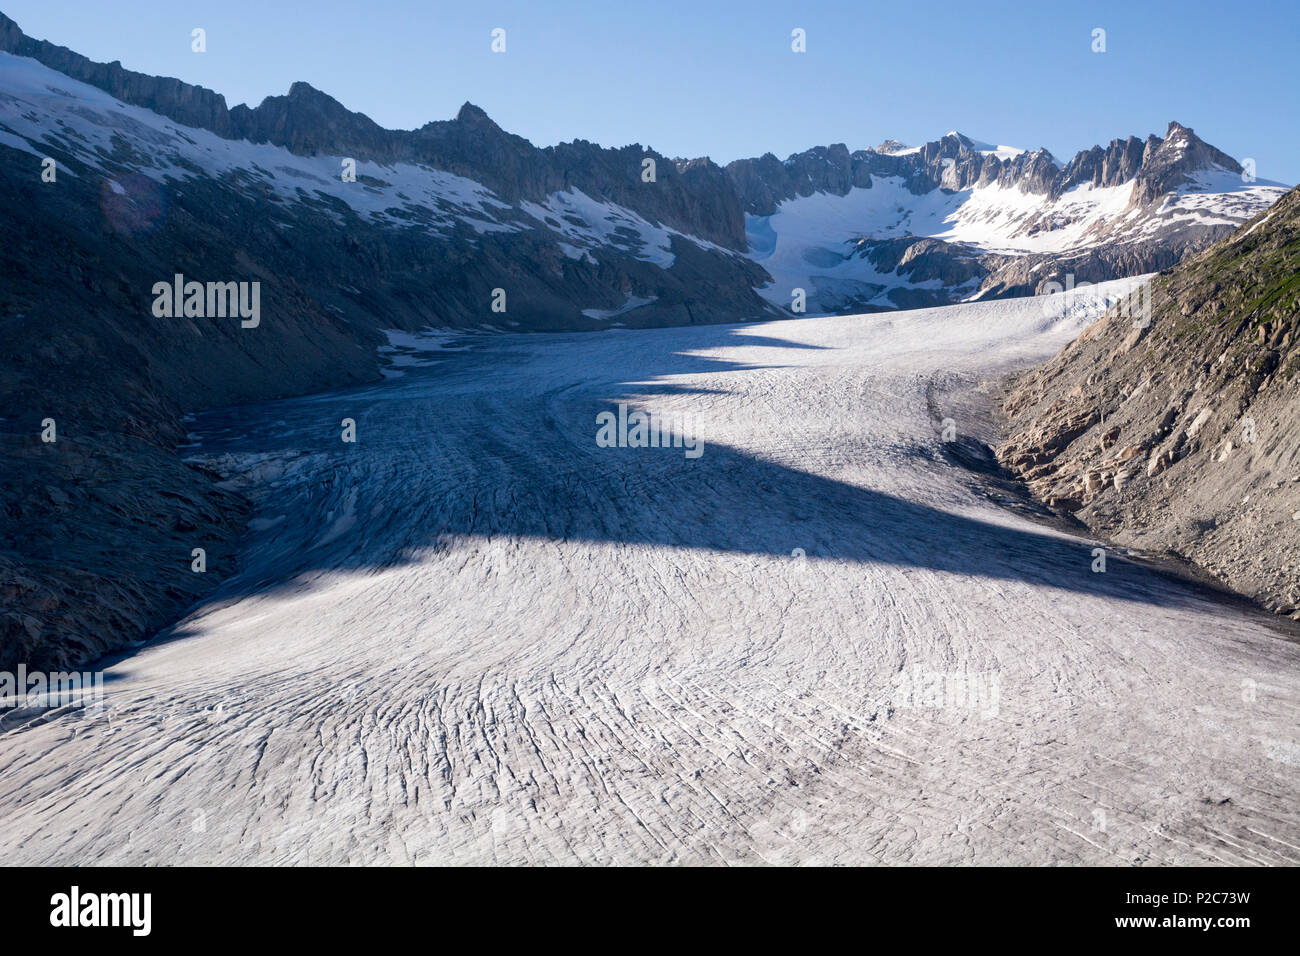 La lingua del ghiacciaio del Rodano, la sorgente del fiume Rodano, Uri Alpi del canton Vallese, Svizzera Foto Stock